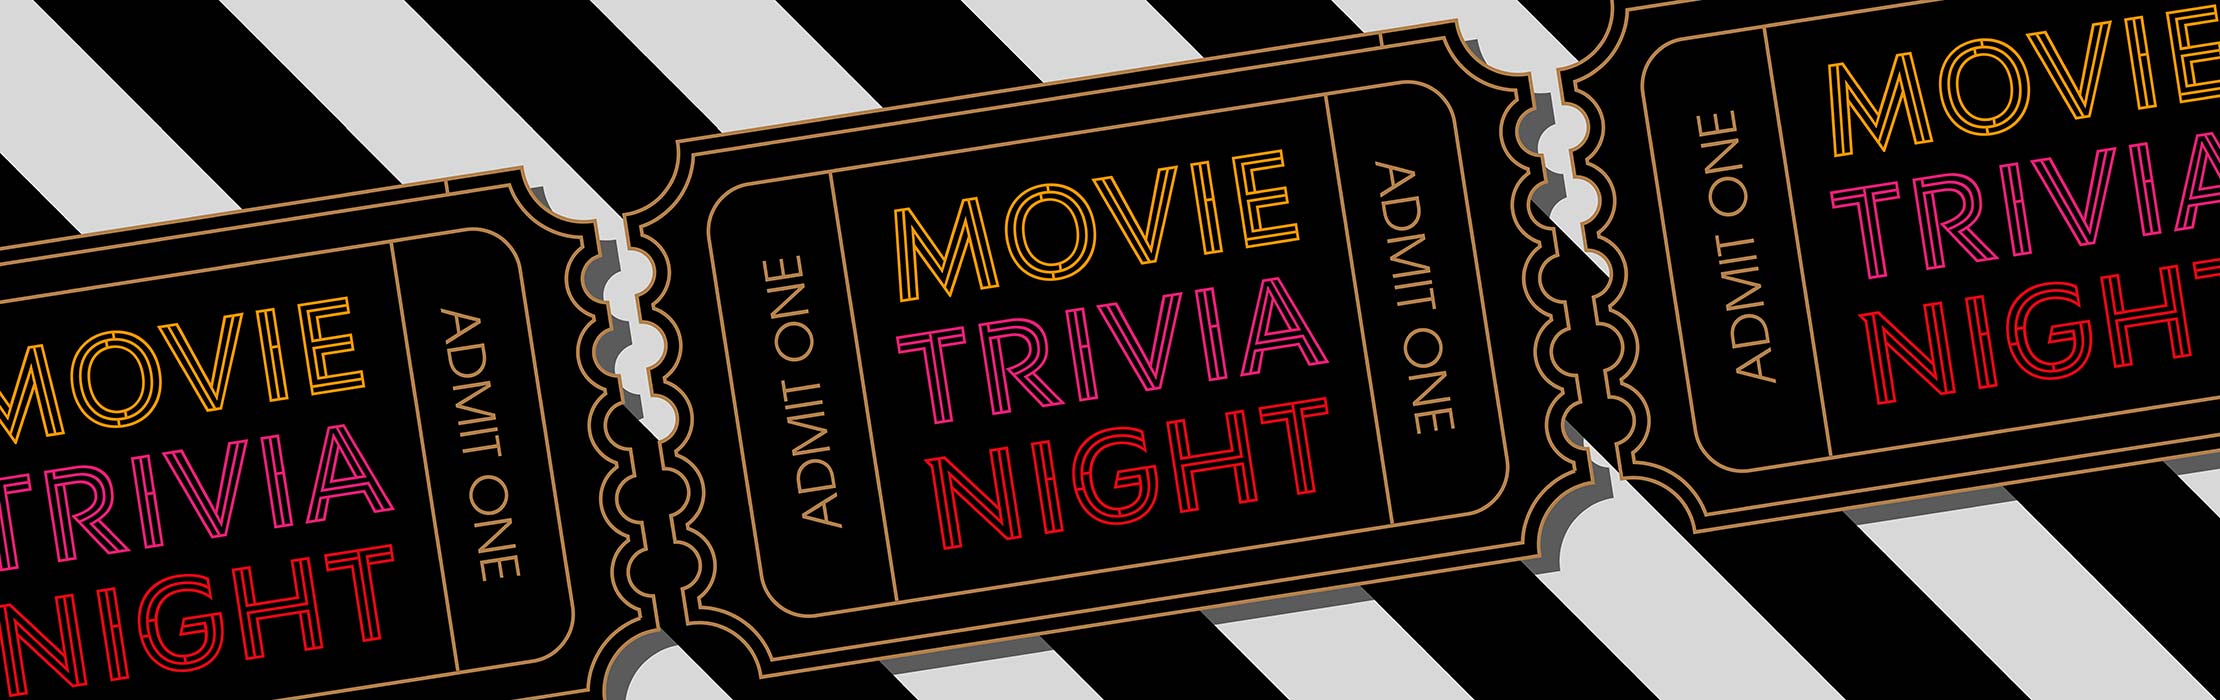 /film/Movie-Trivia-Night